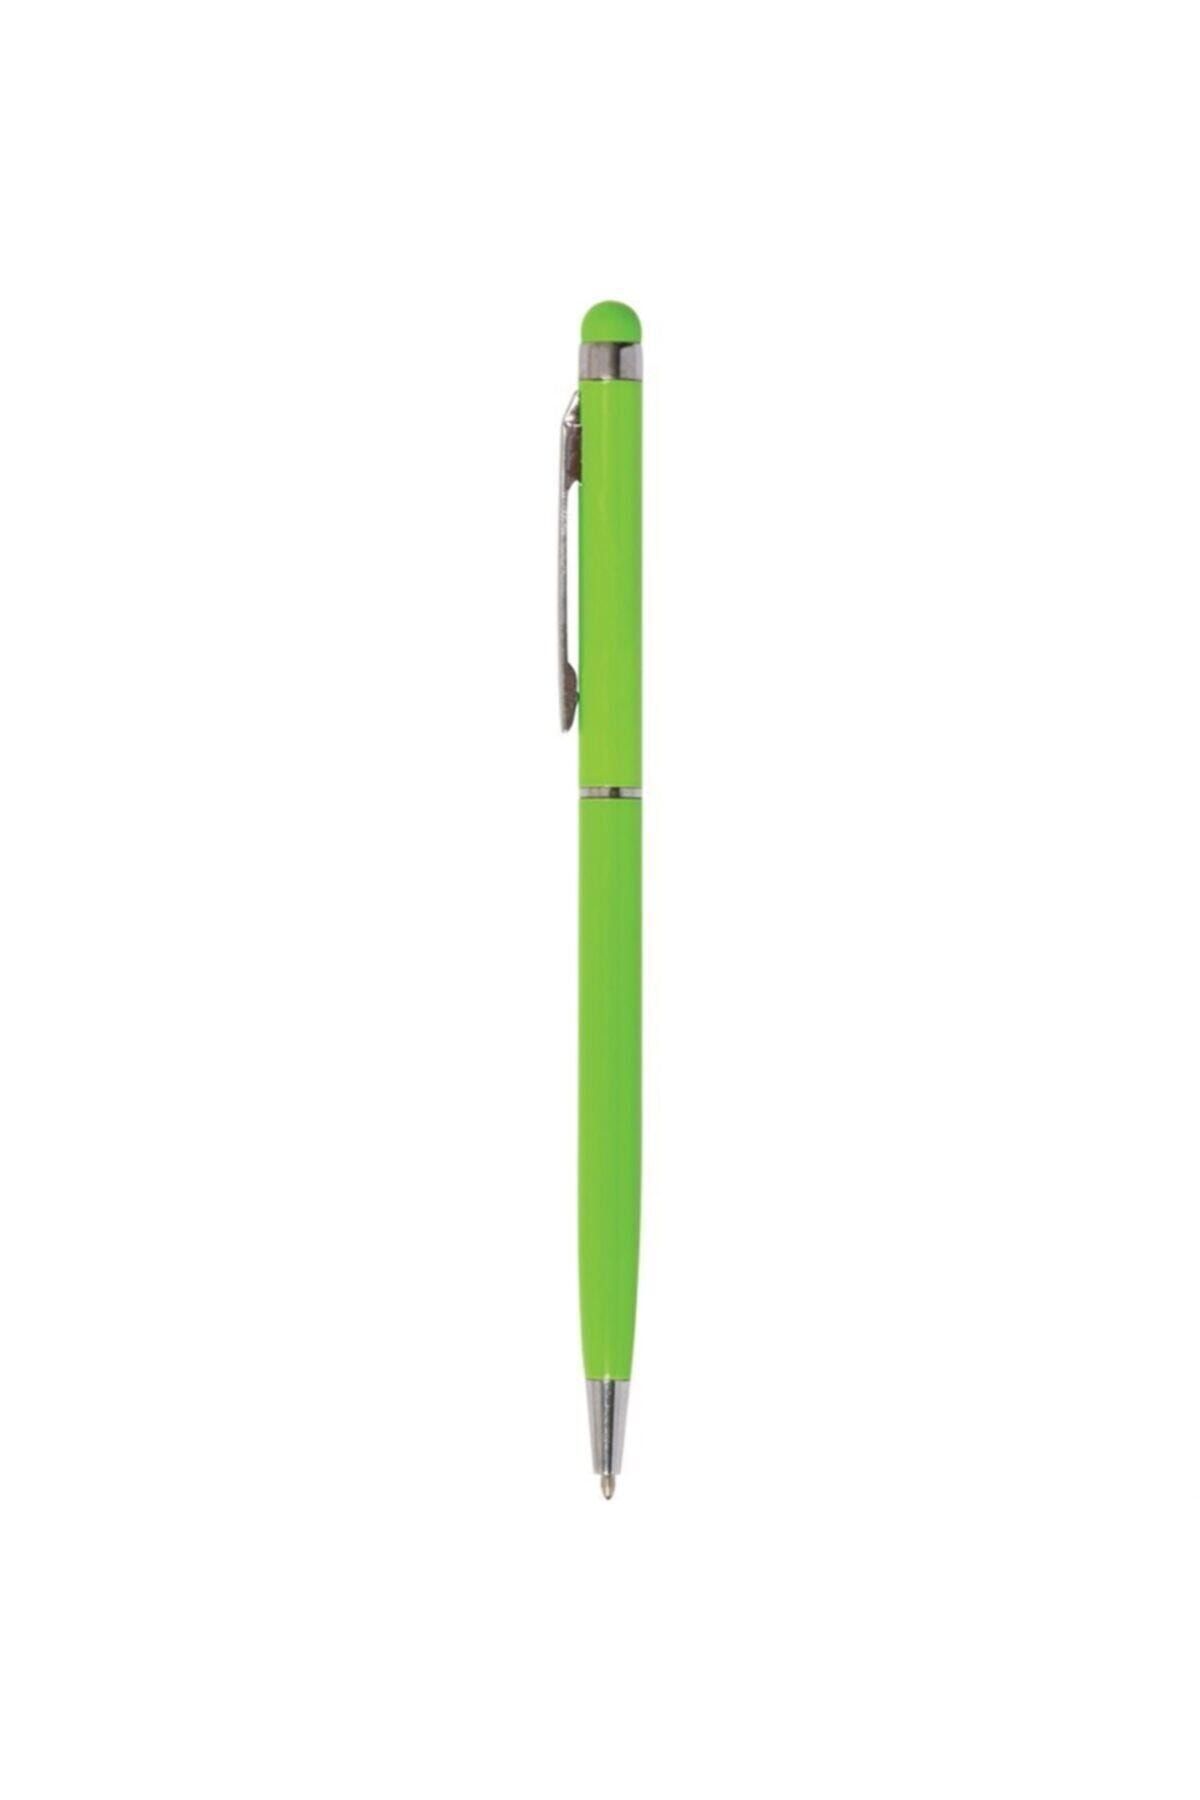 CAN TREND Tablet Telefon Kalemi Dokunmatik Metal Tükenmez Kalem Fıstık Yeşili